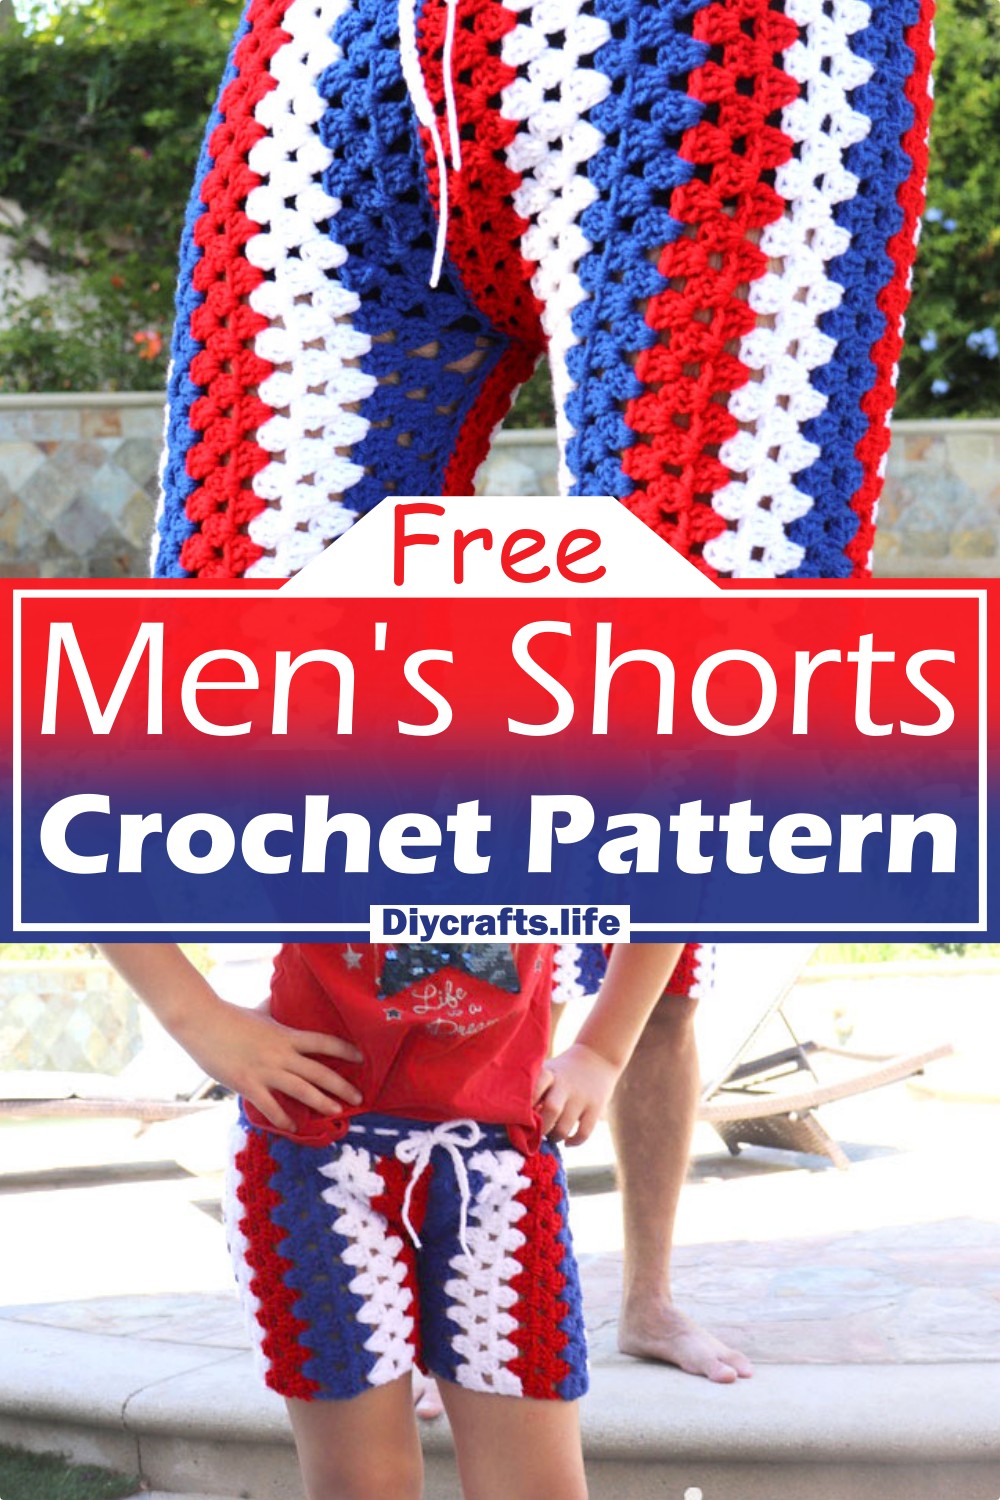 Men's Crochet Shorts Free Pattern